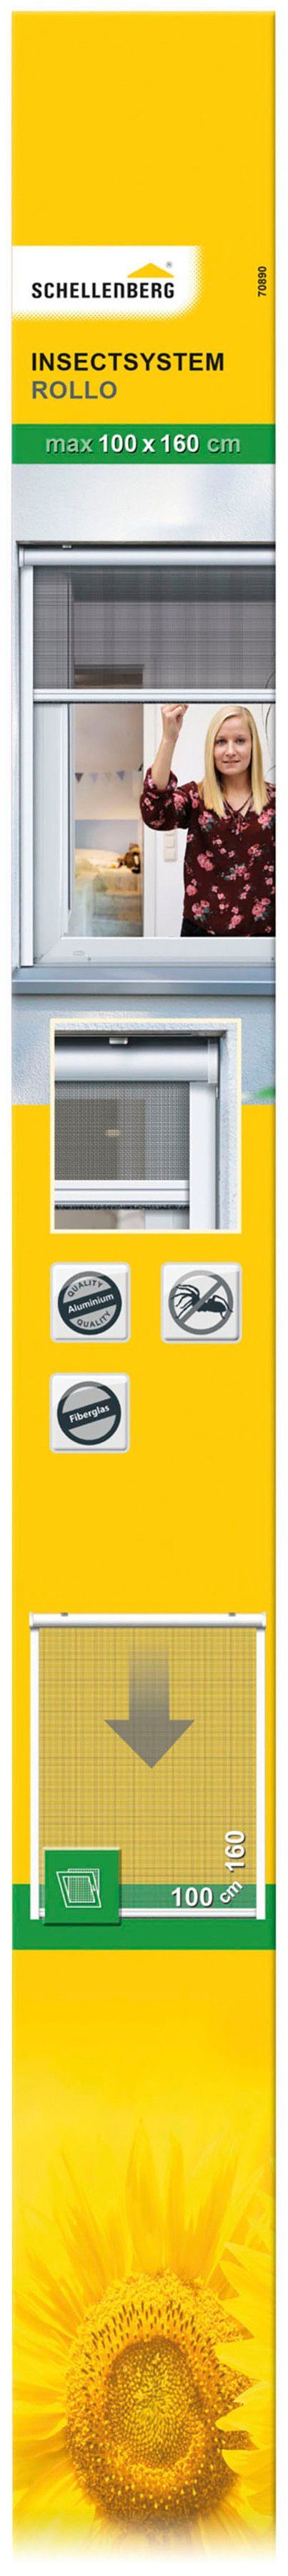 Insektenschutzrollo für Fenster, SCHELLENBERG, verschraubt, weiß, 100 Fliegengitter, x cm, 160 70890